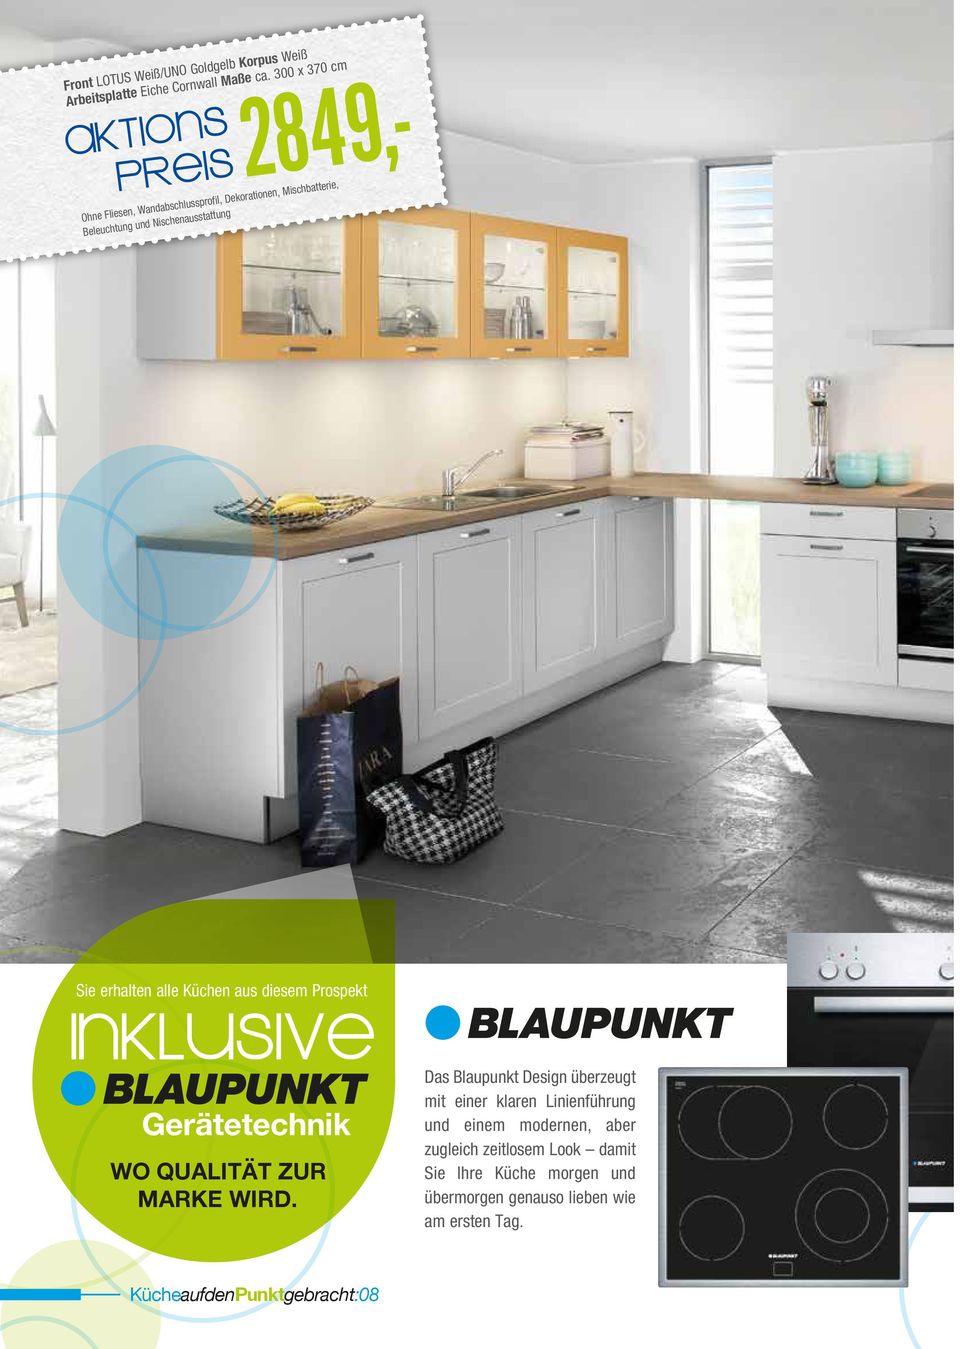 Nischenausstattung Sie erhalten alle Küchen aus diesem Prospekt Das Blaupunkt Design überzeugt mit einer klaren